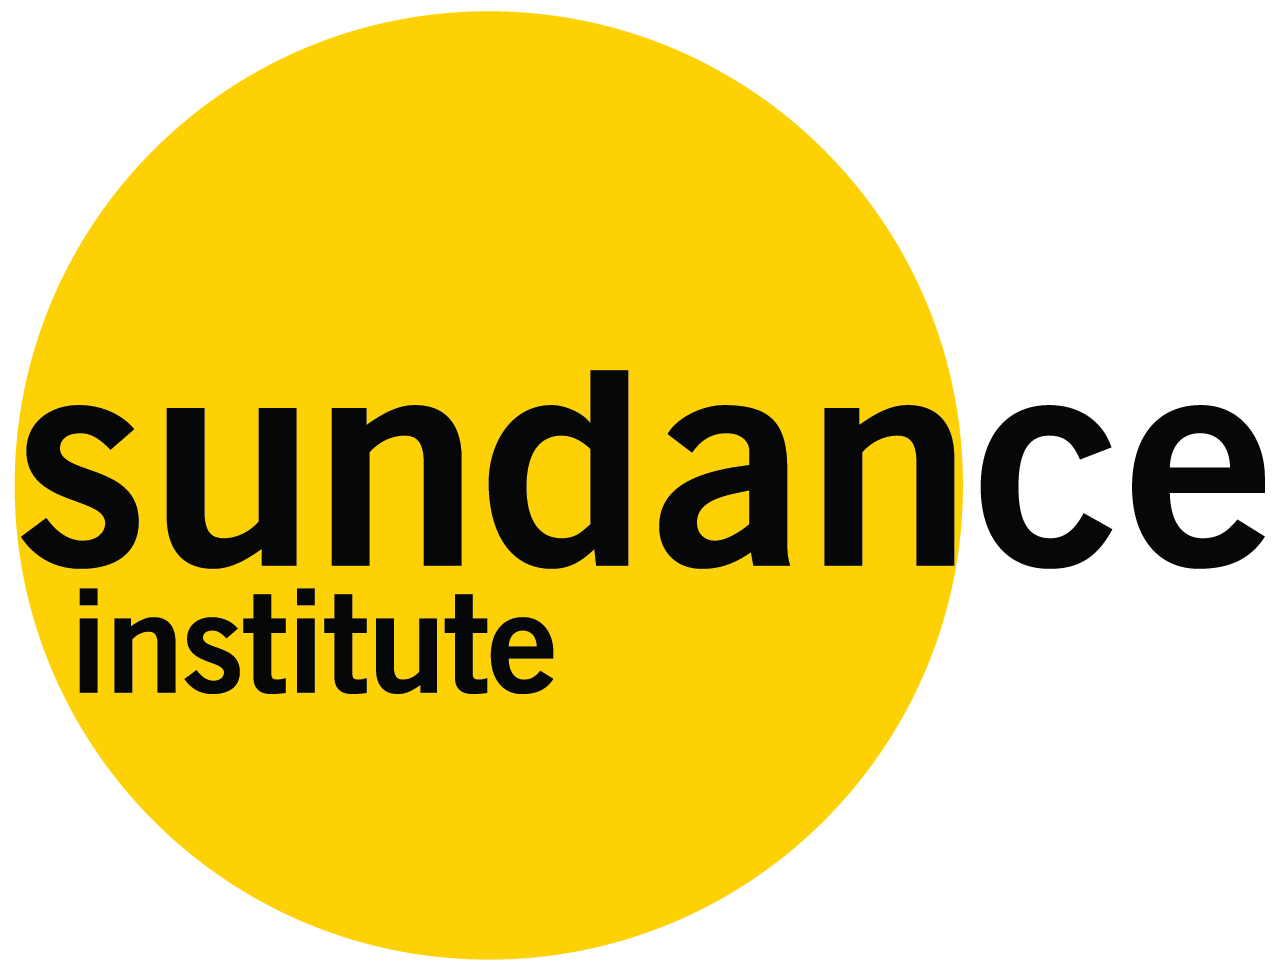 Sundance Institute Logo